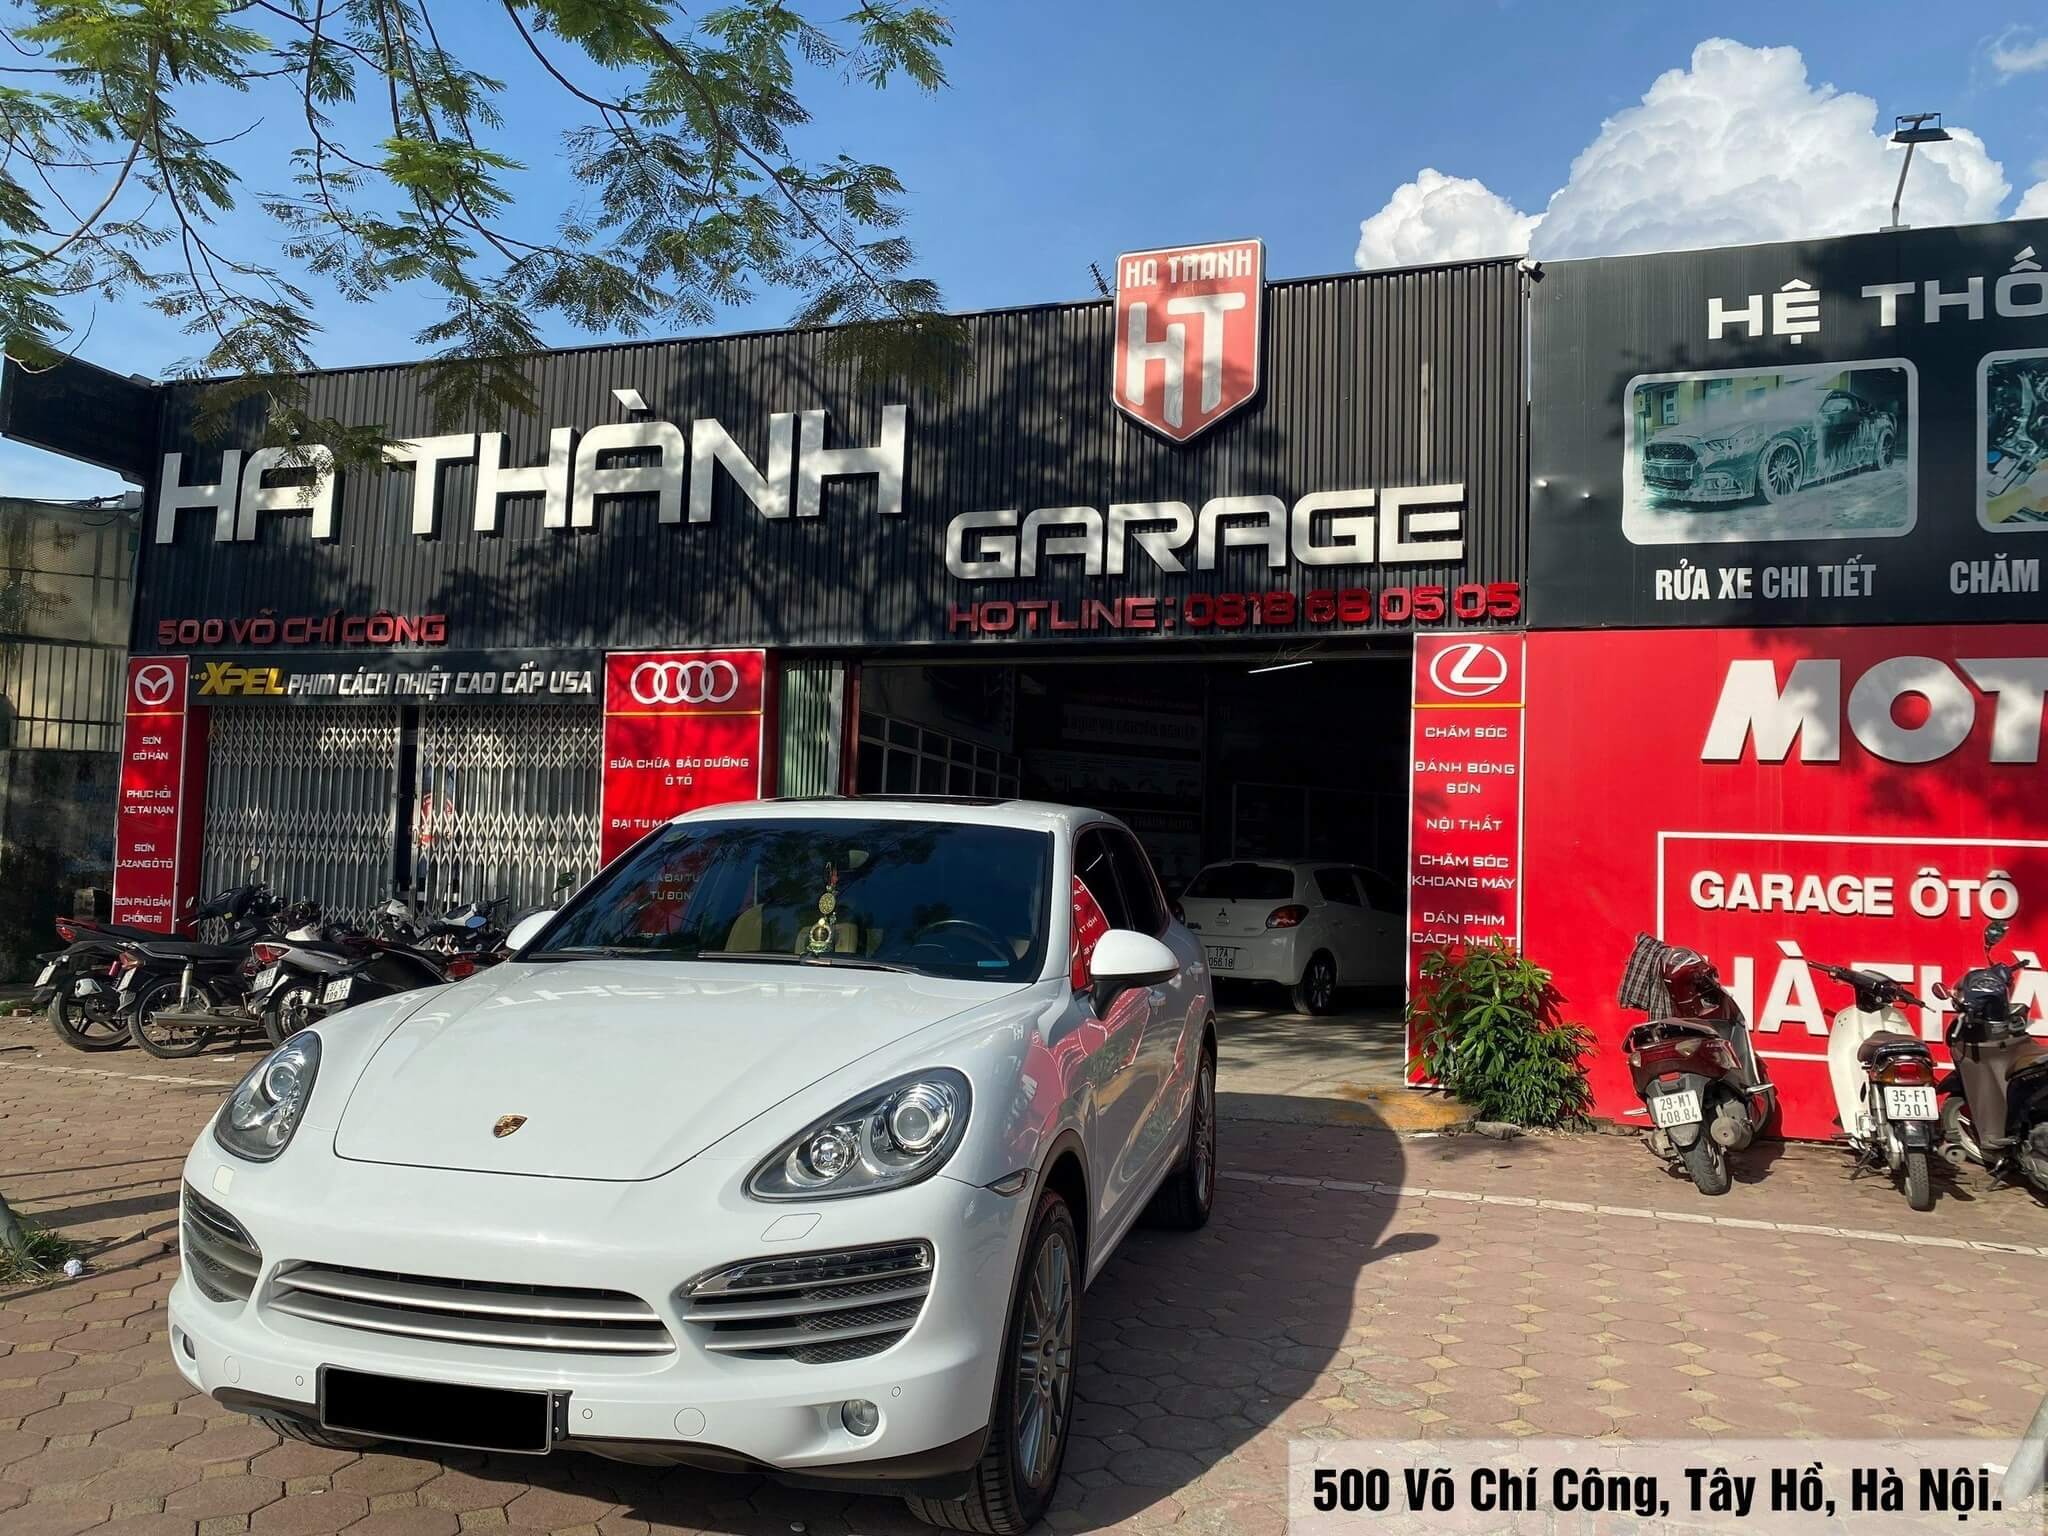 Hệ thống Bảo dưỡng & Sửa chữa ô tô cao cấp - Hà Thành Garage